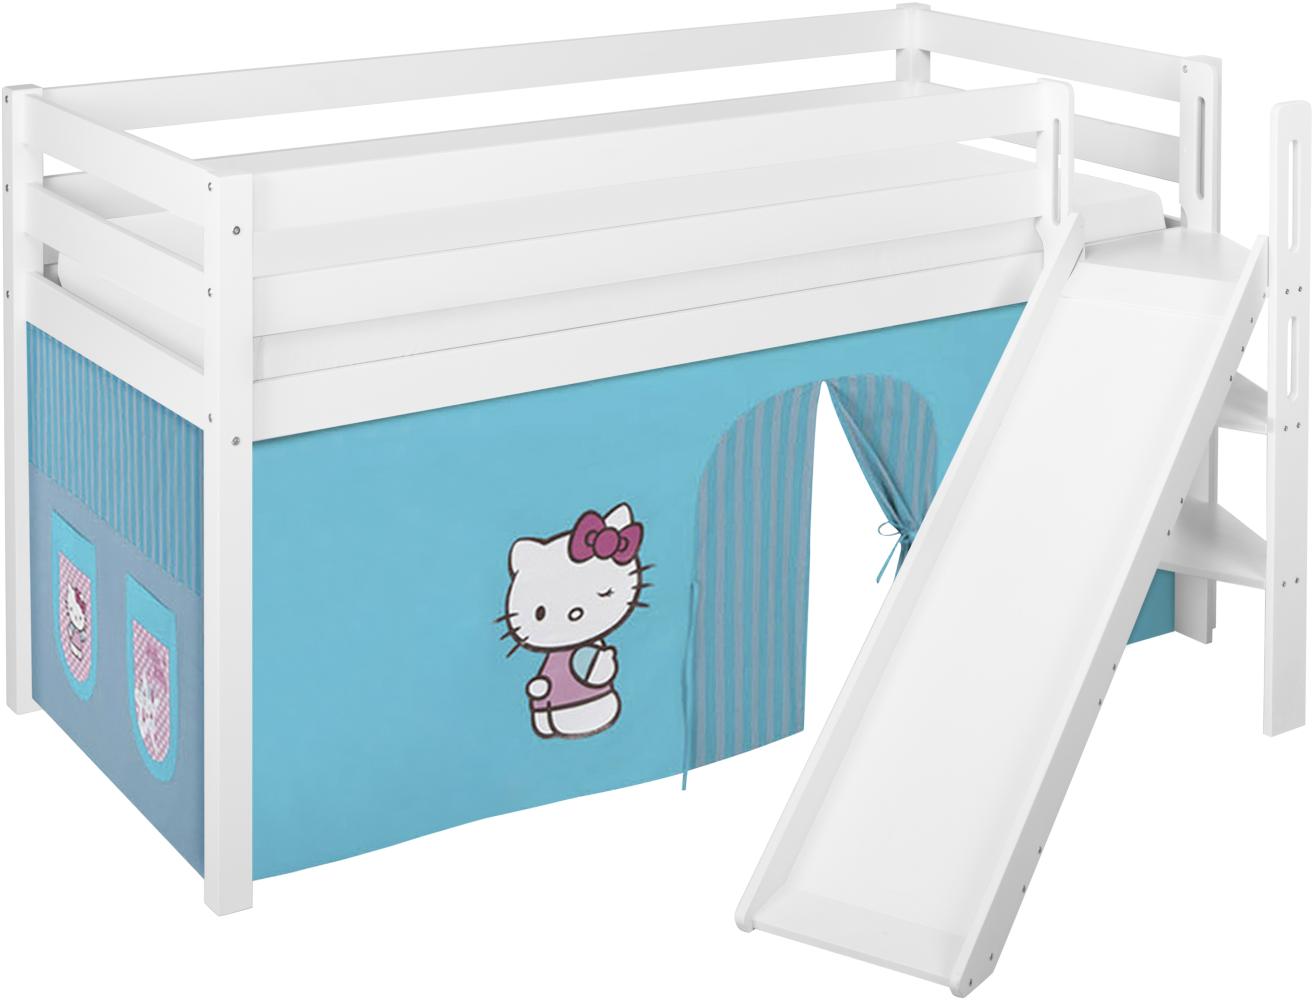 Lilokids 'Jelle' Spielbett 90 x 190 cm, Hello Kitty Türkis, Kiefer massiv, mit schräger Rutsche und Vorhang Bild 1